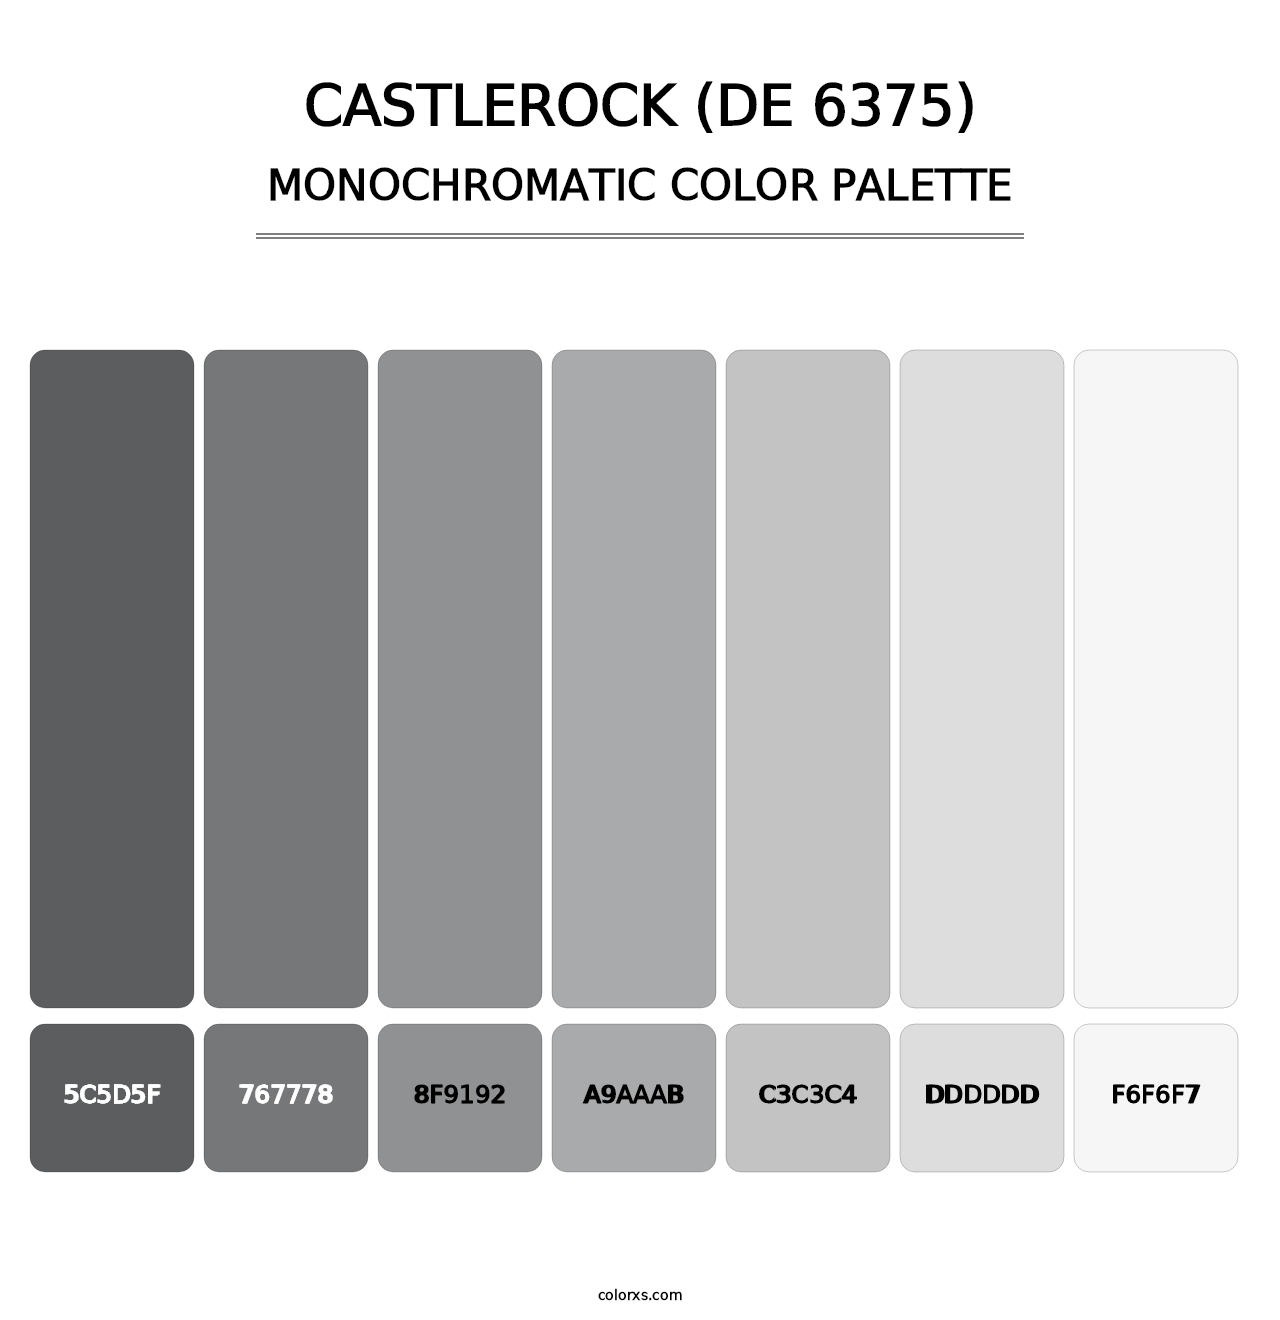 Castlerock (DE 6375) - Monochromatic Color Palette